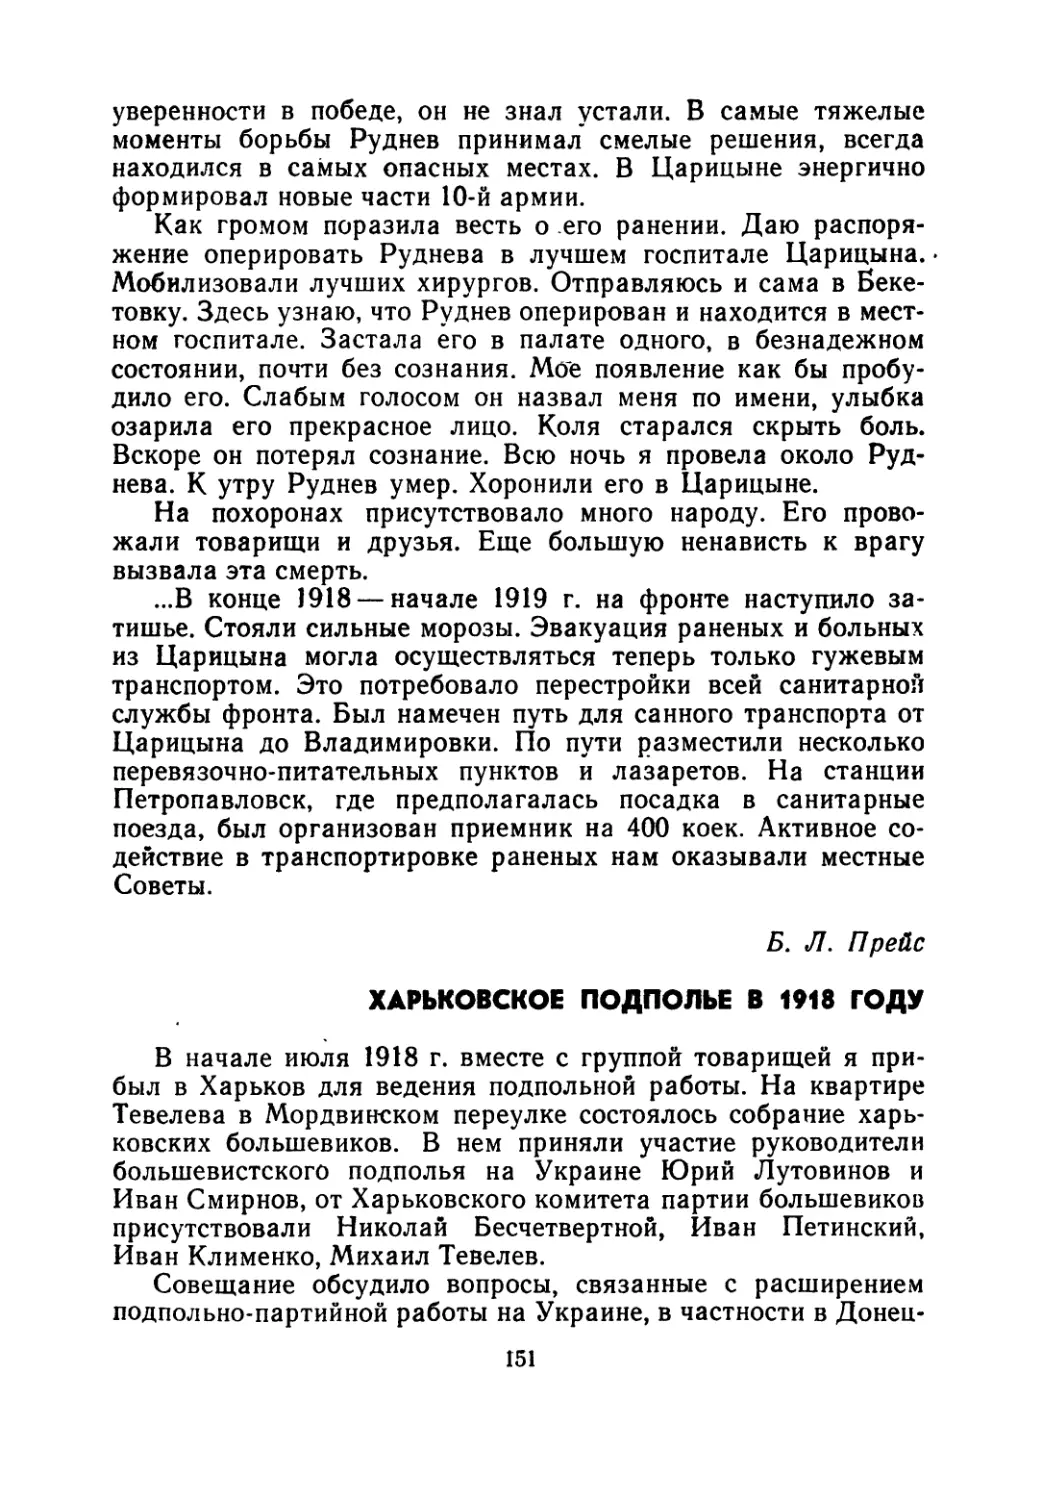 Б.Л.  Прейс.  Харьковское  подполье  в  1918  году